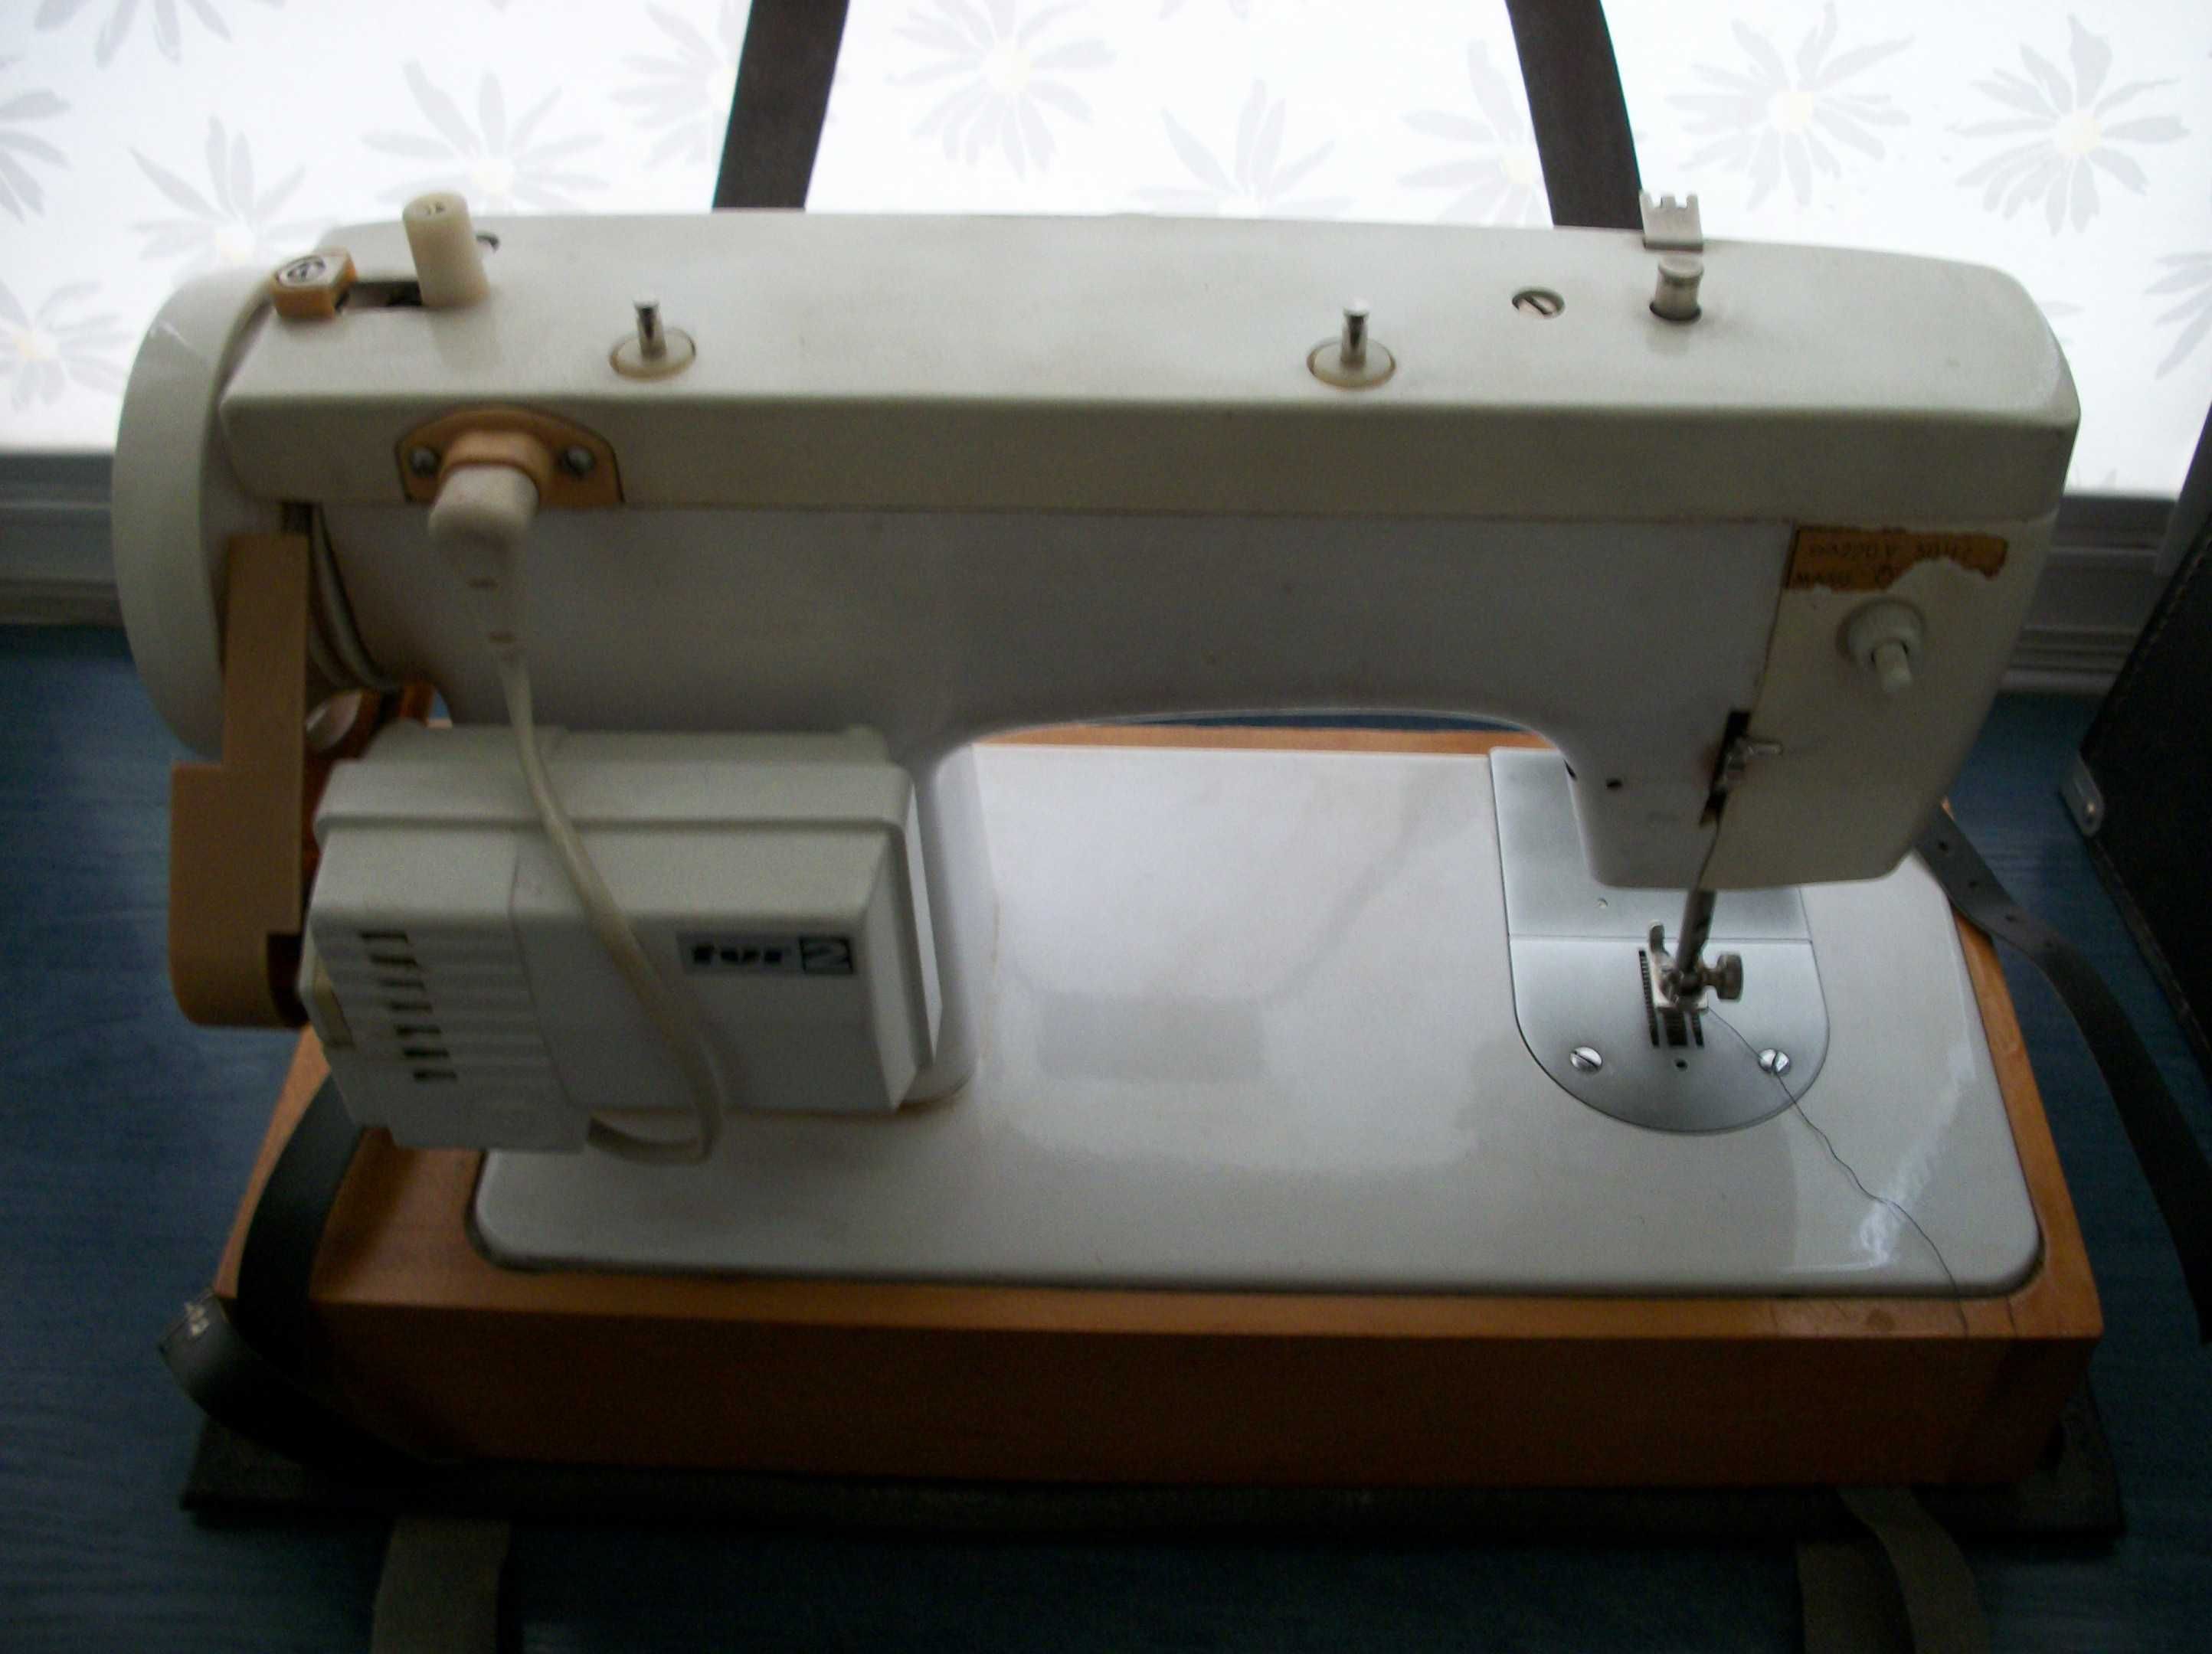 Швейная машинка Чайка 132-м,футляр, паспорт-инструкция, и другое